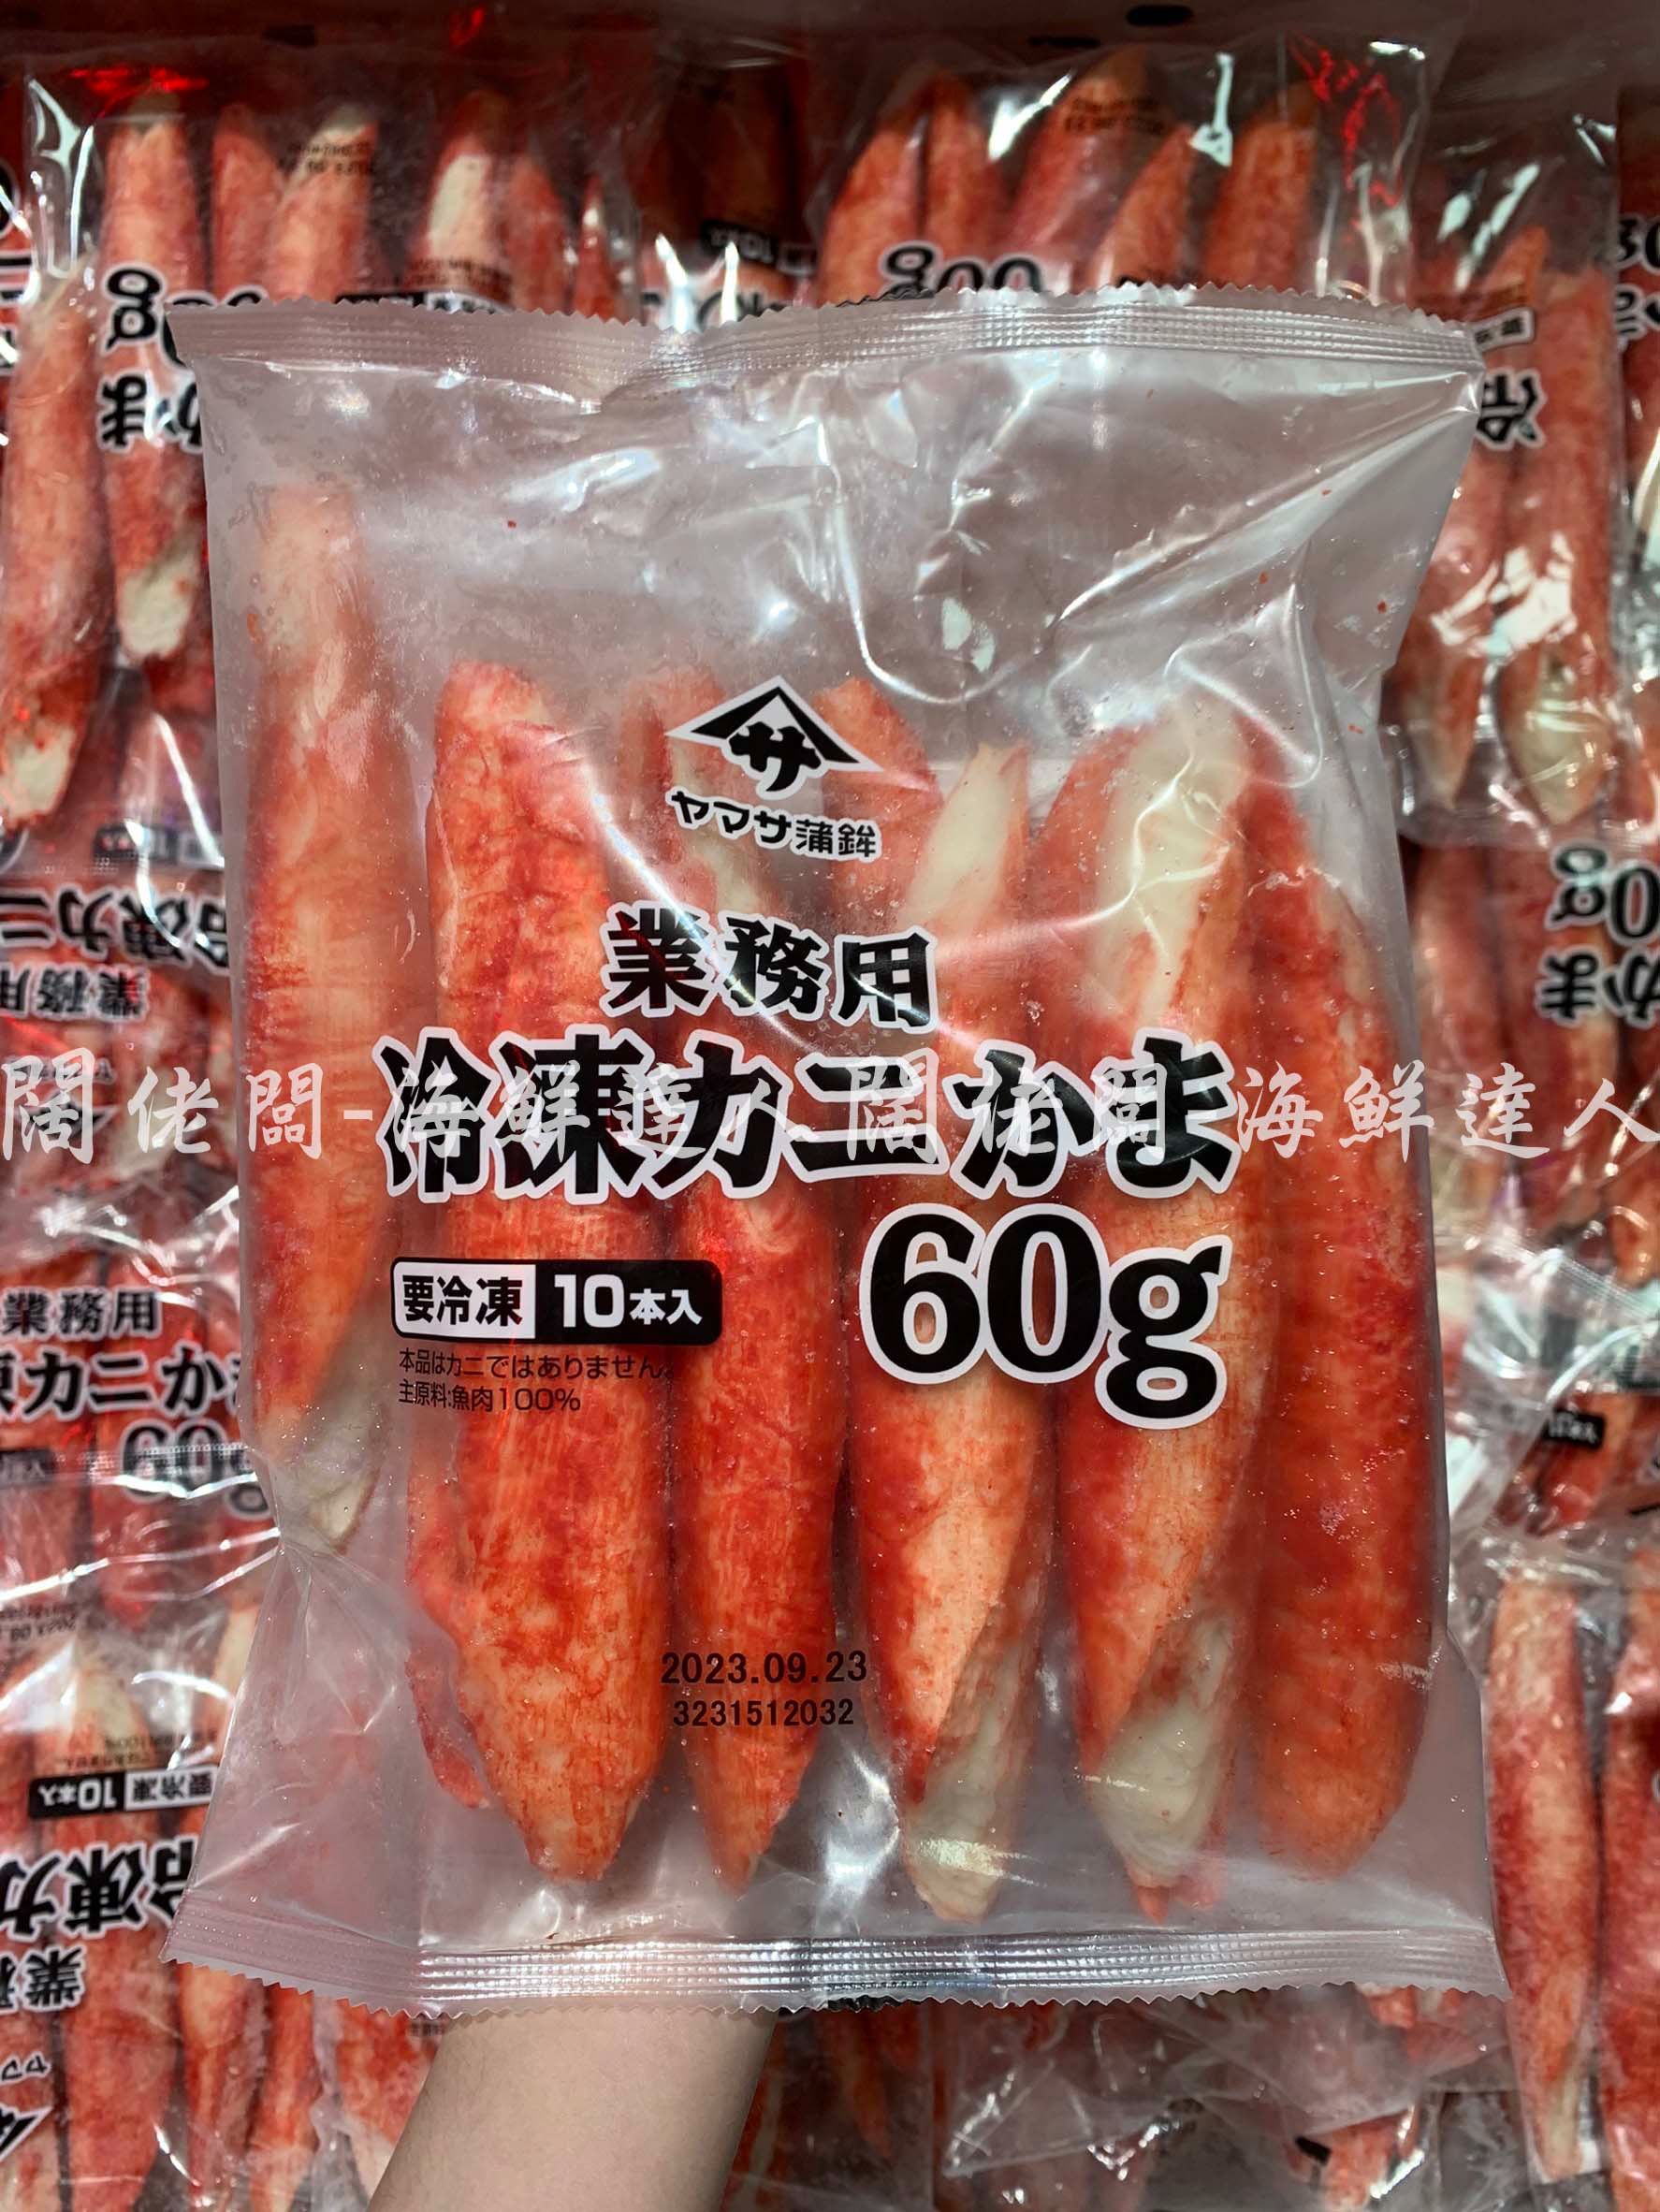 巨大蟹肉風味棒 日本蟹味棒 蟹味棒 蟳味棒 蟹棒 日本蟹棒 火鍋料